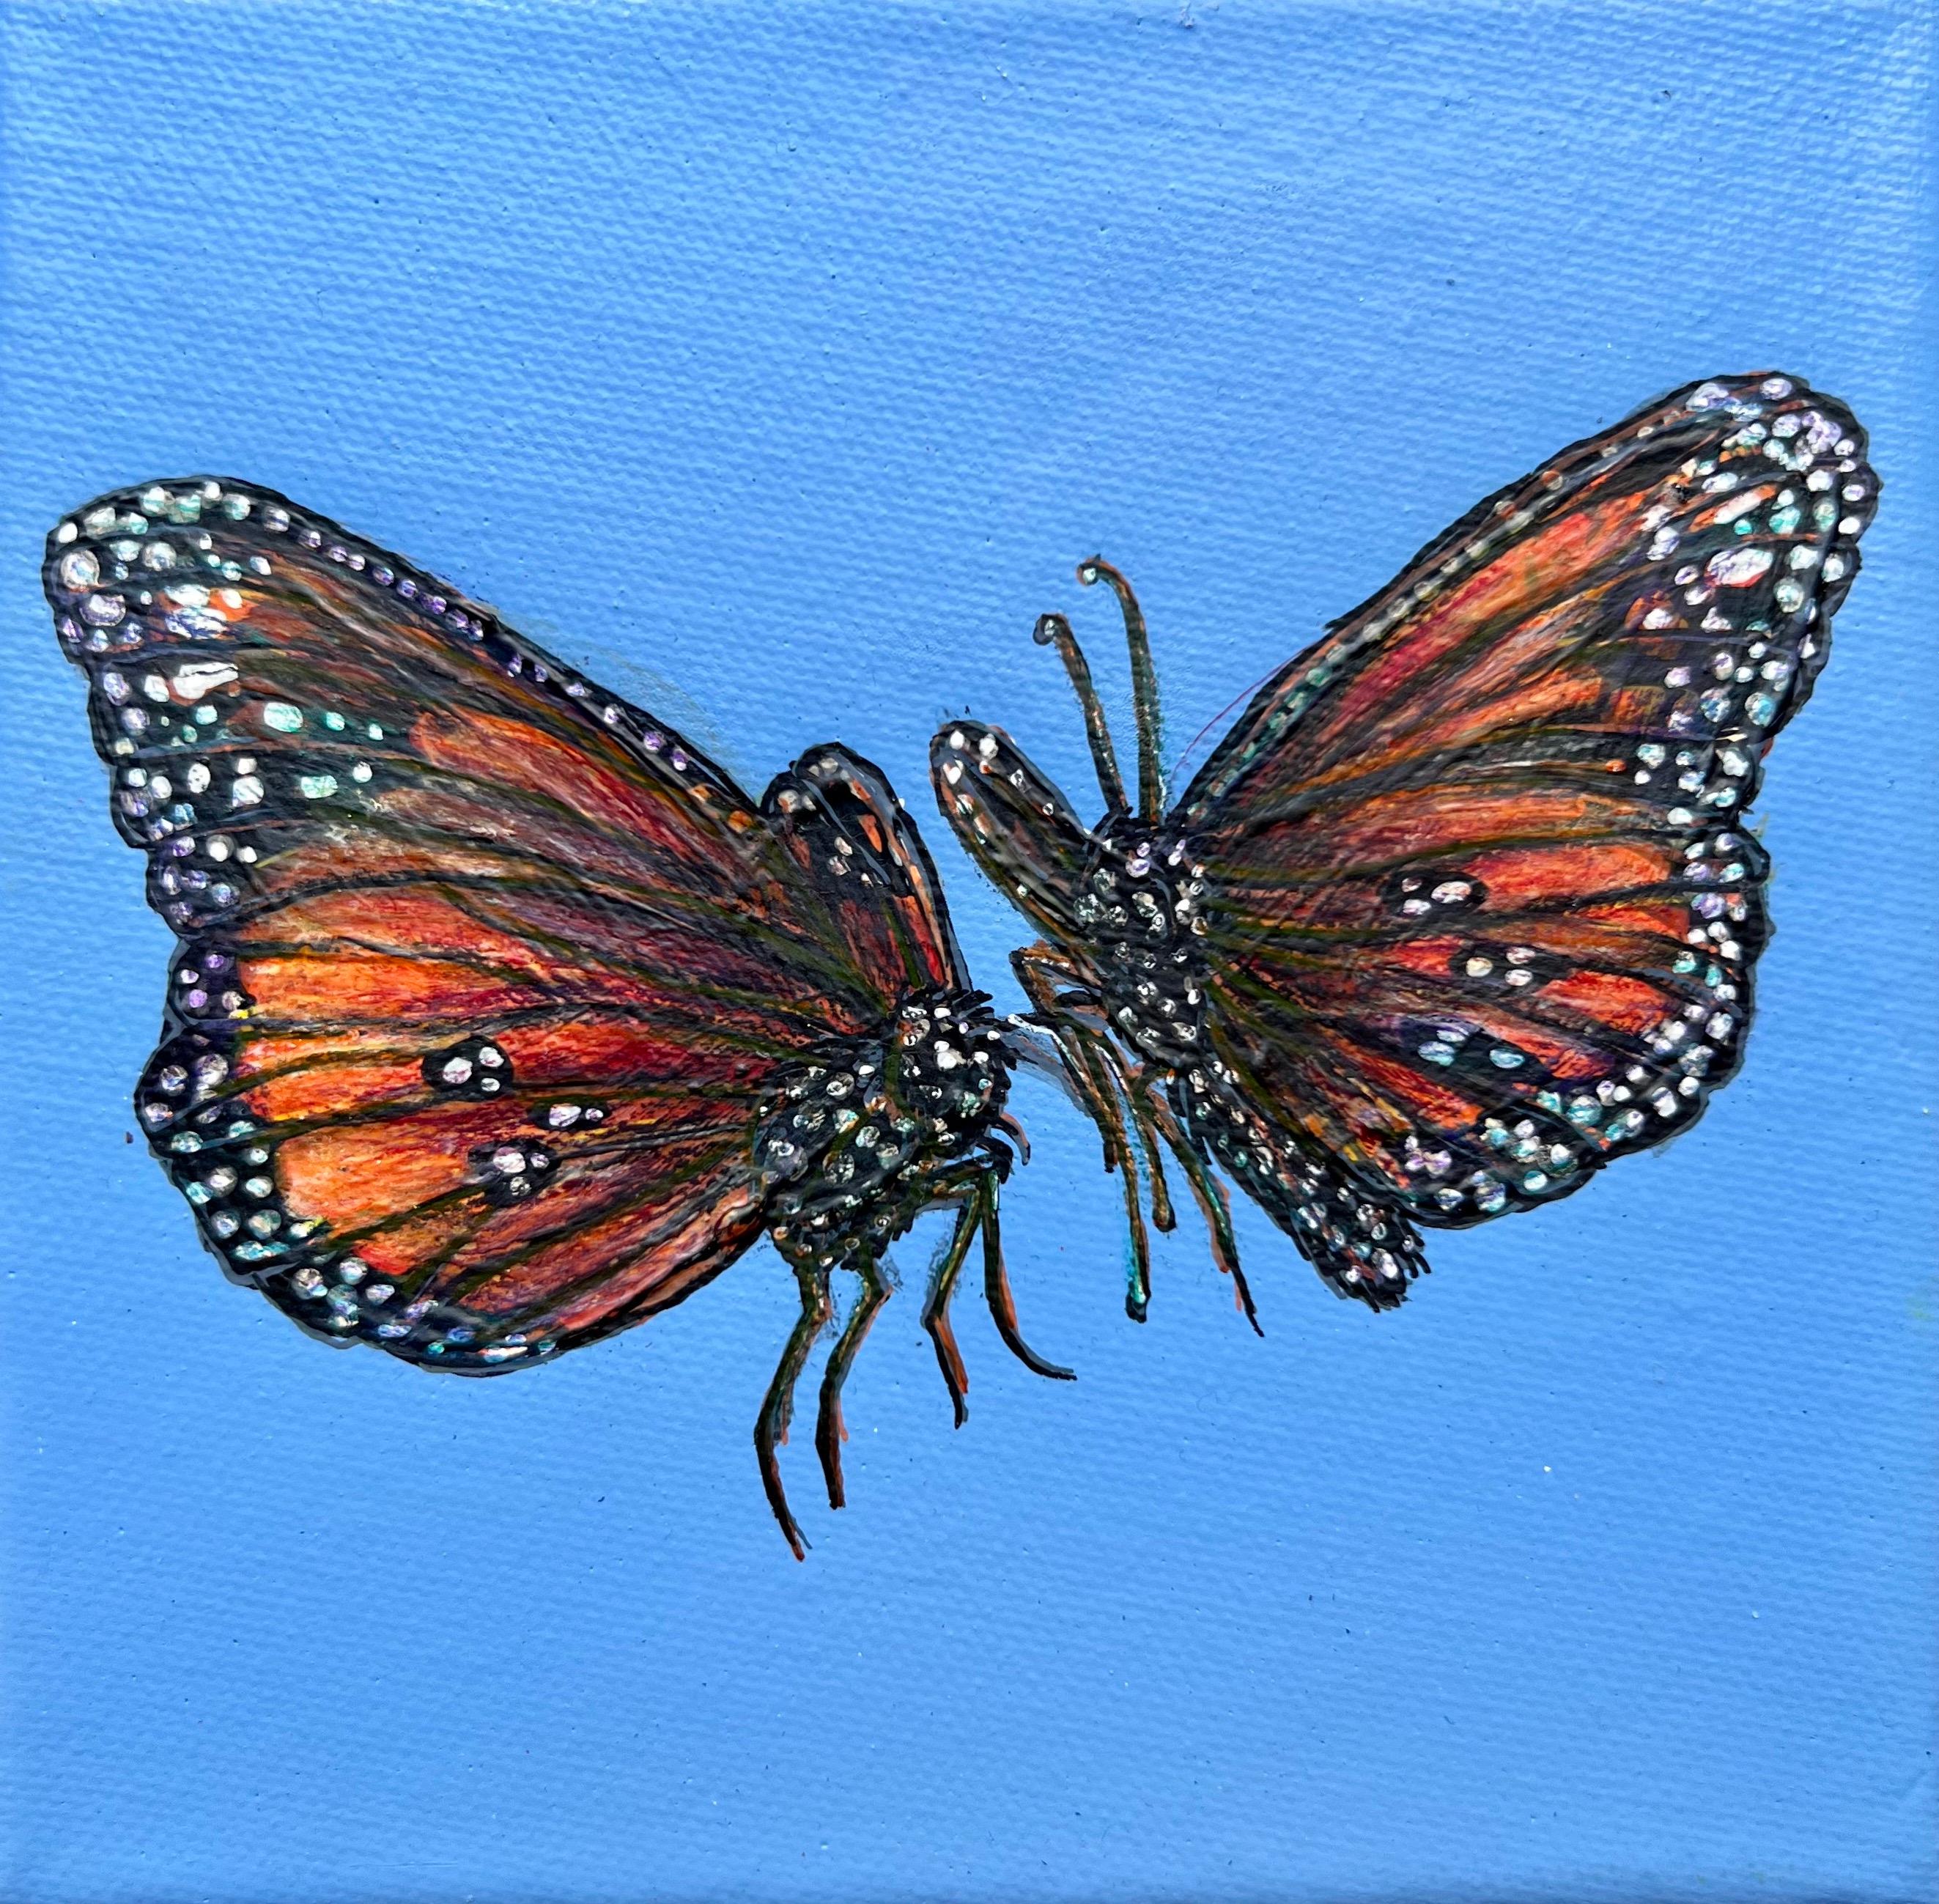 Ascension Sky- papillon bleu réalisme contemporain espace négatif peinture acrylique